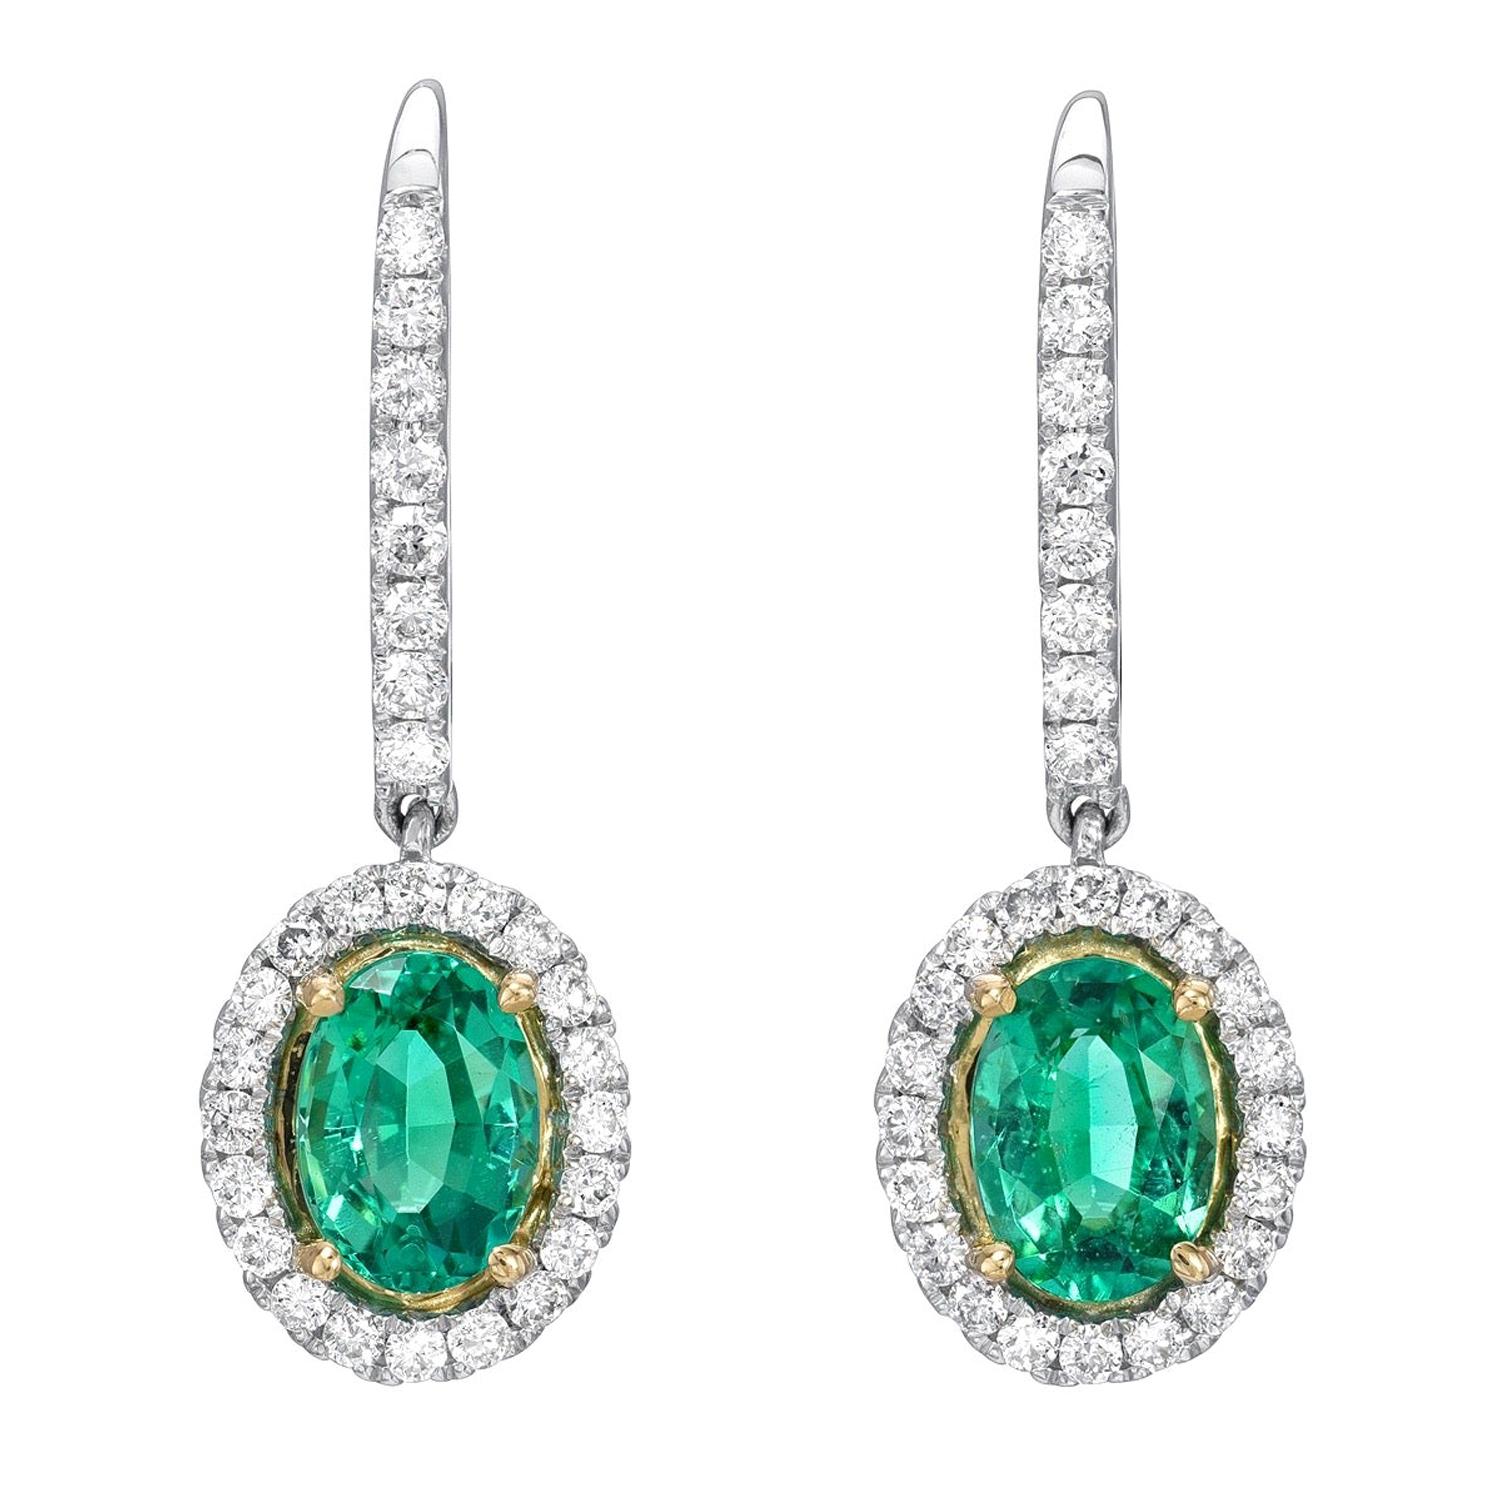 Emerald Earrings 1.48 Carat Ovals